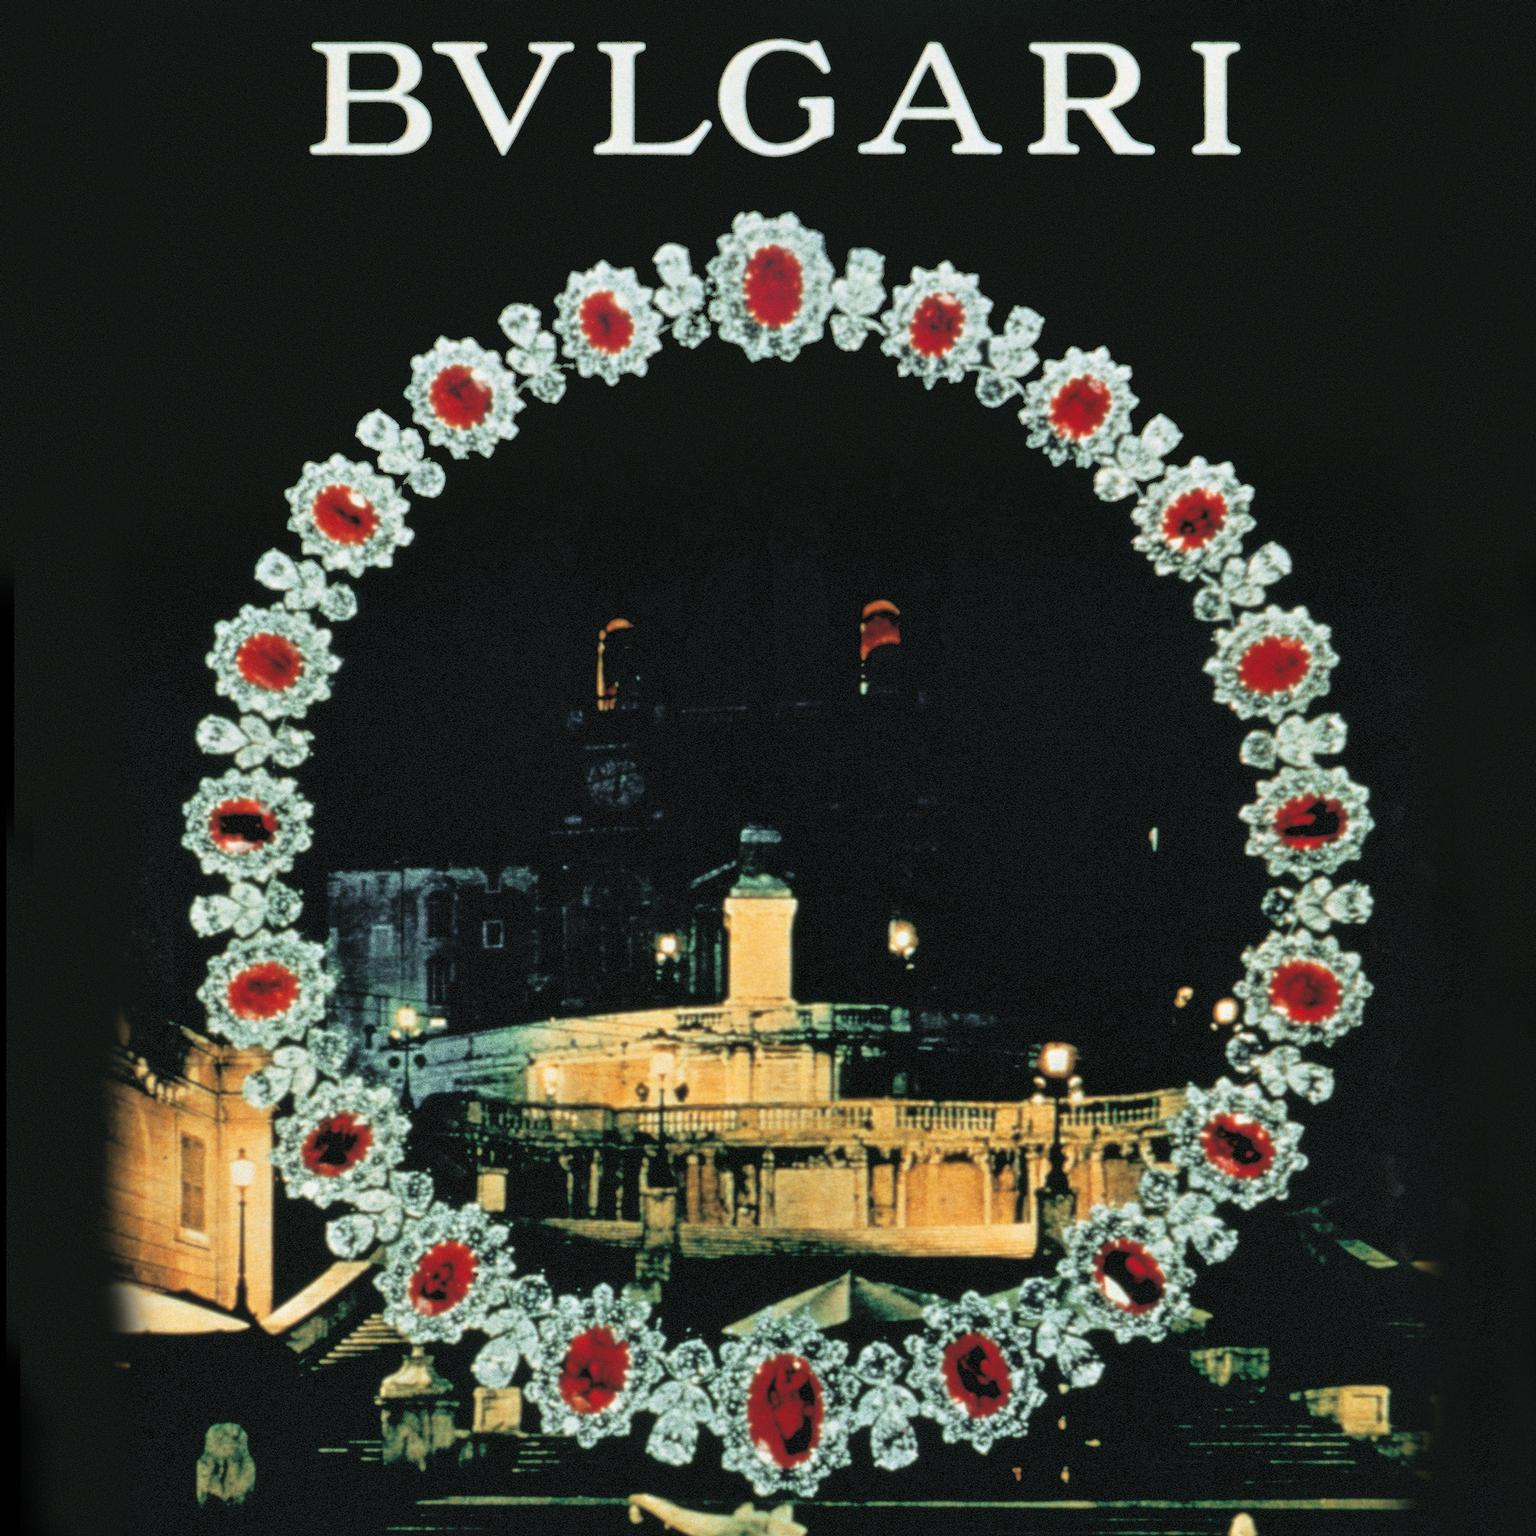 bulgari advertising